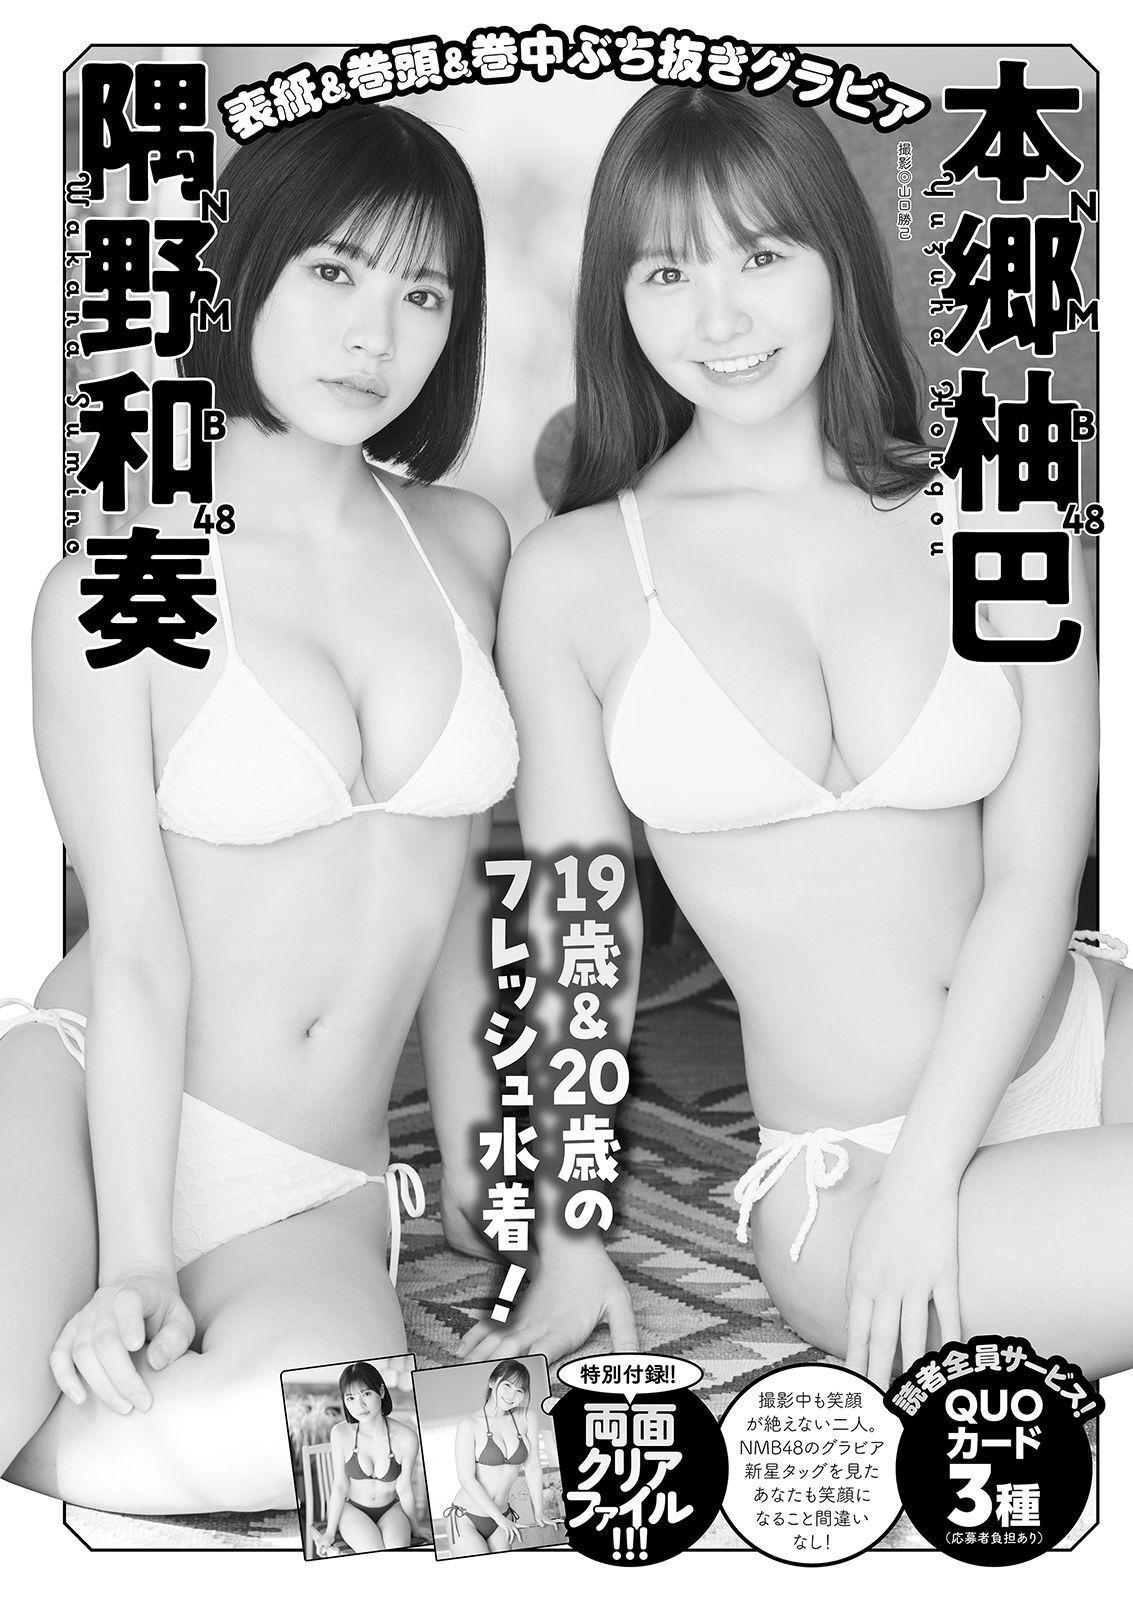 HKT48, Manga Action 2023.04.04 (漫画アクション 2023年04月04日号) img 7